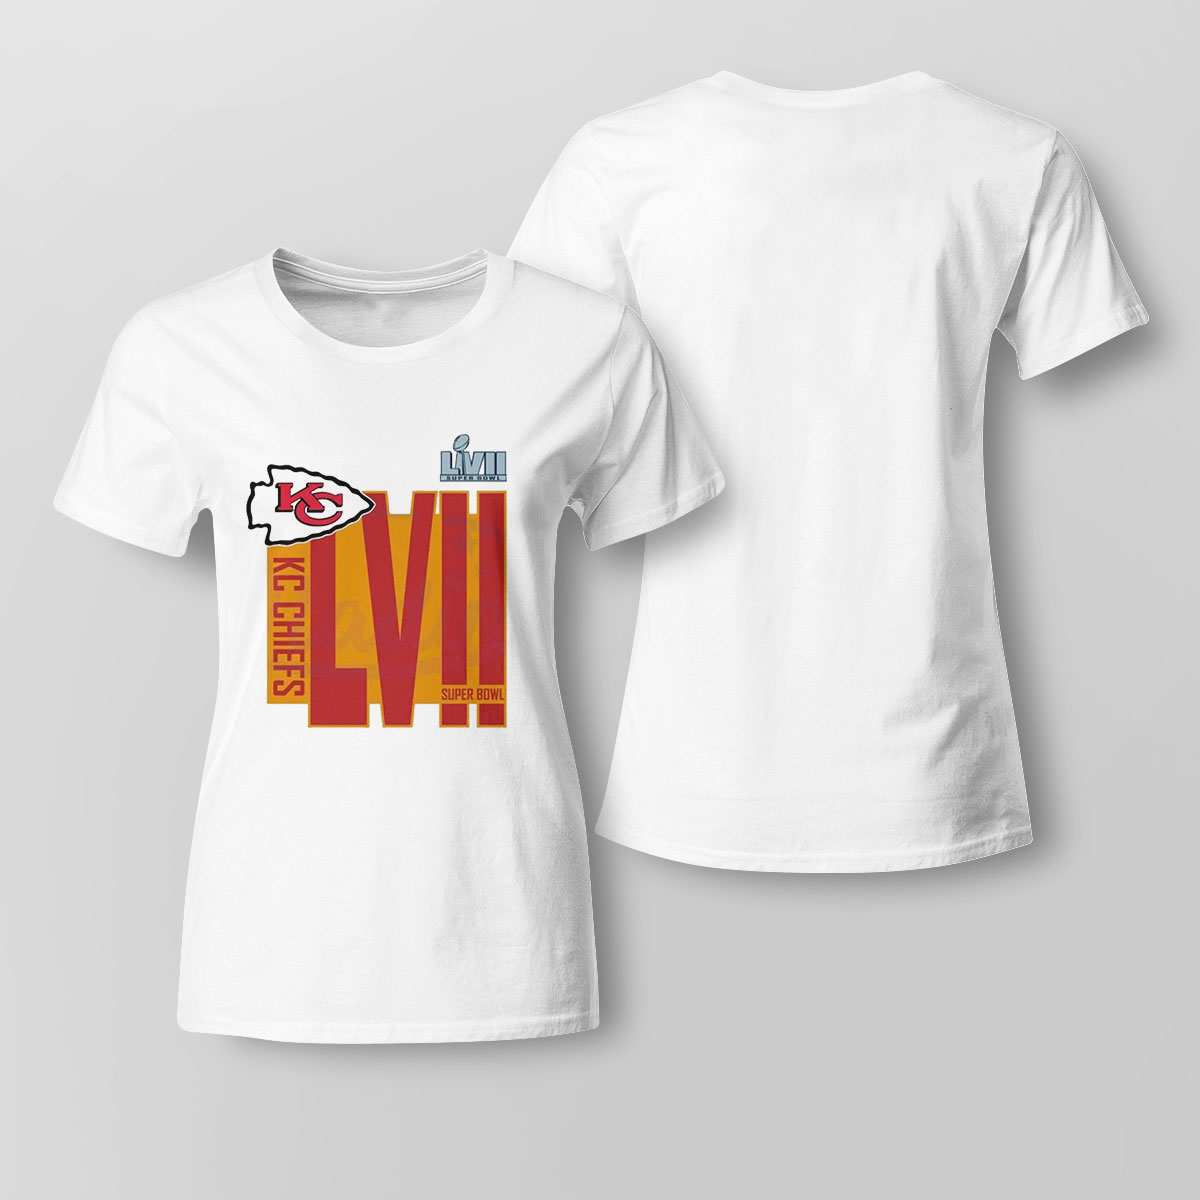 Kansas City Chiefs Kc Chiefs Superbowl Lvii Shirt Ladies Tee